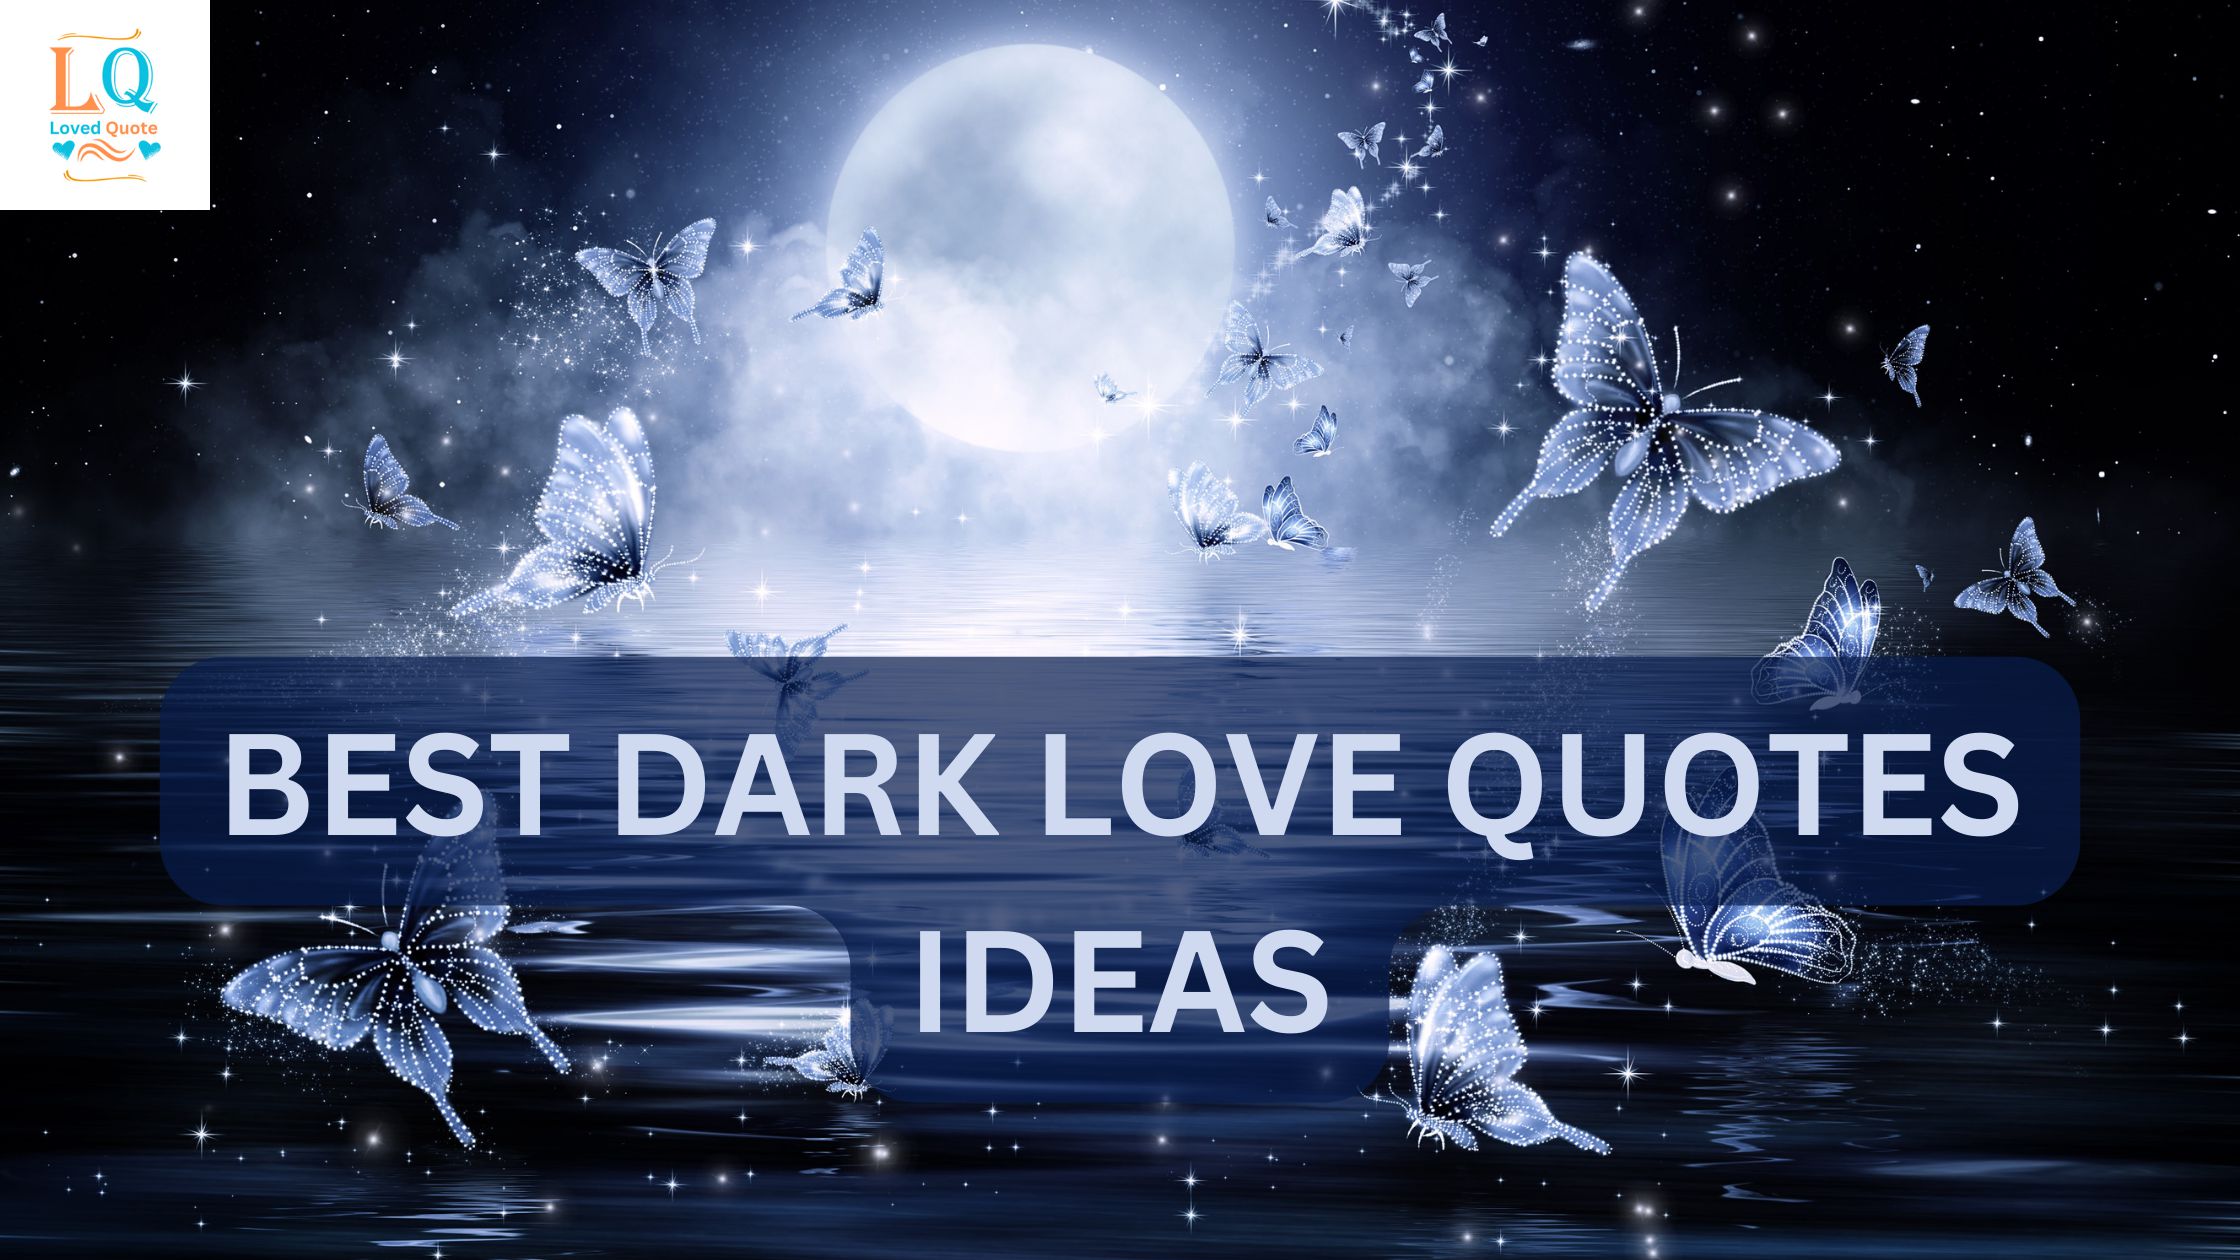 Best Dark Love Quotes ideas